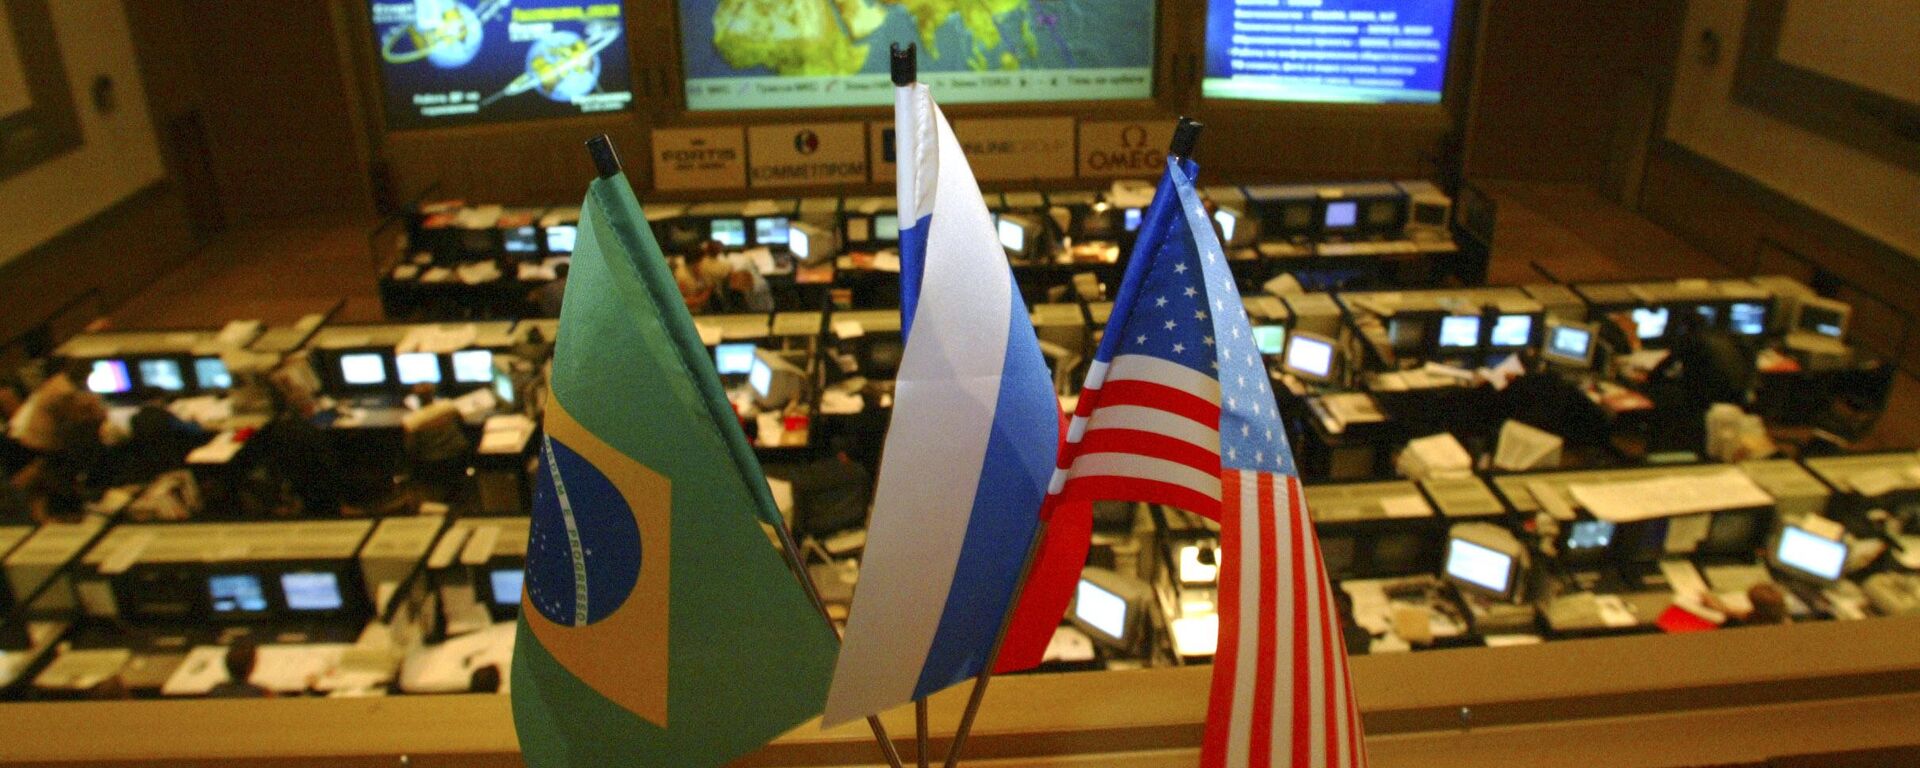 Bandeiras de Brasil, Rússia e EUA no Centro de Controle de Missão RKA da Agência Espacial Federal da Rússia, Roscosmos, na cidade de Koroliov, região de Moscou - Sputnik Brasil, 1920, 11.05.2022